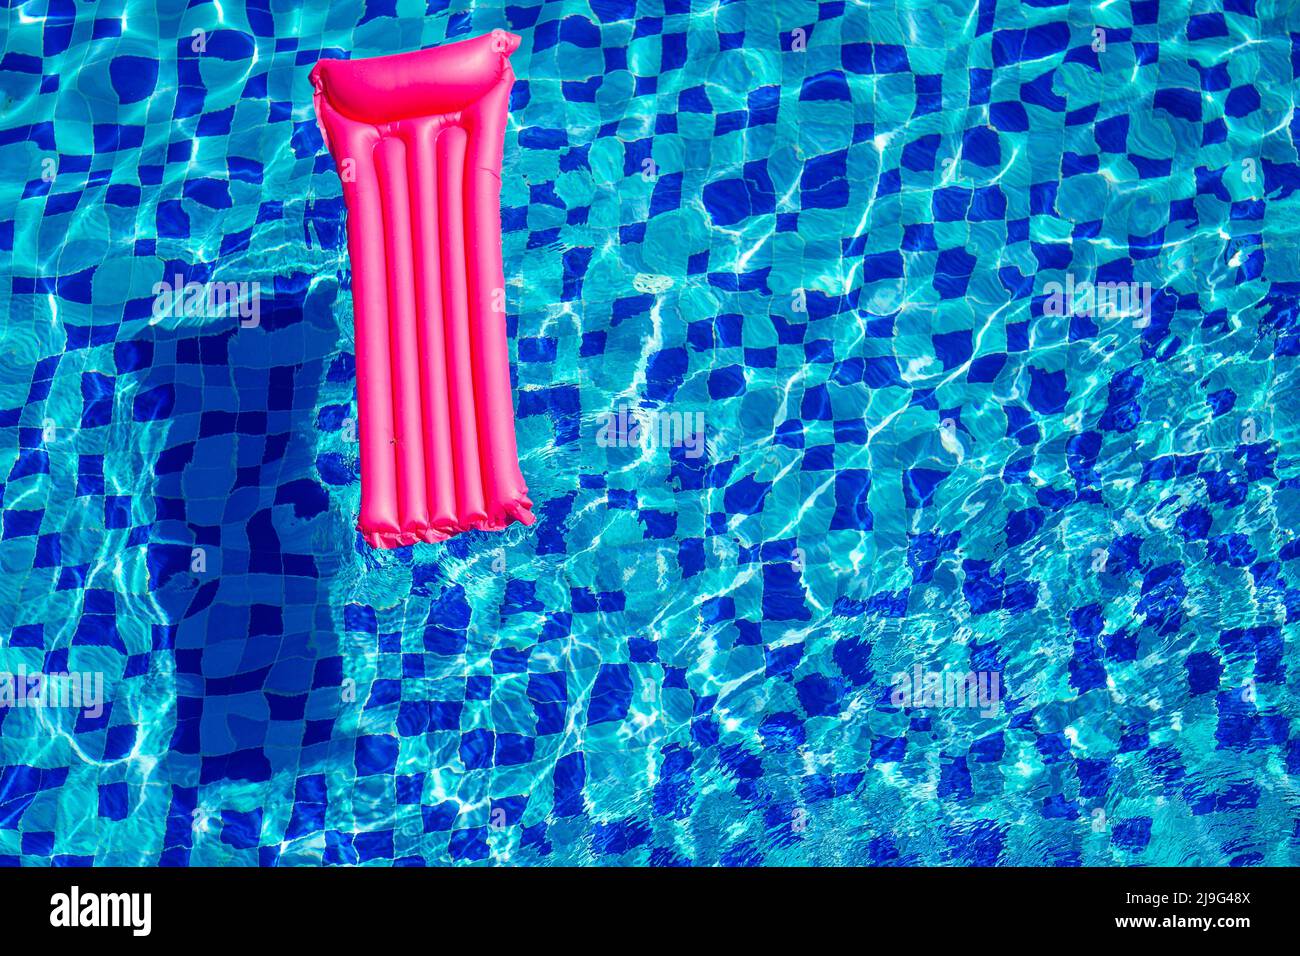 matelas gonflable rose sur bleu turquoise piscine copier espace vue de dessus Banque D'Images